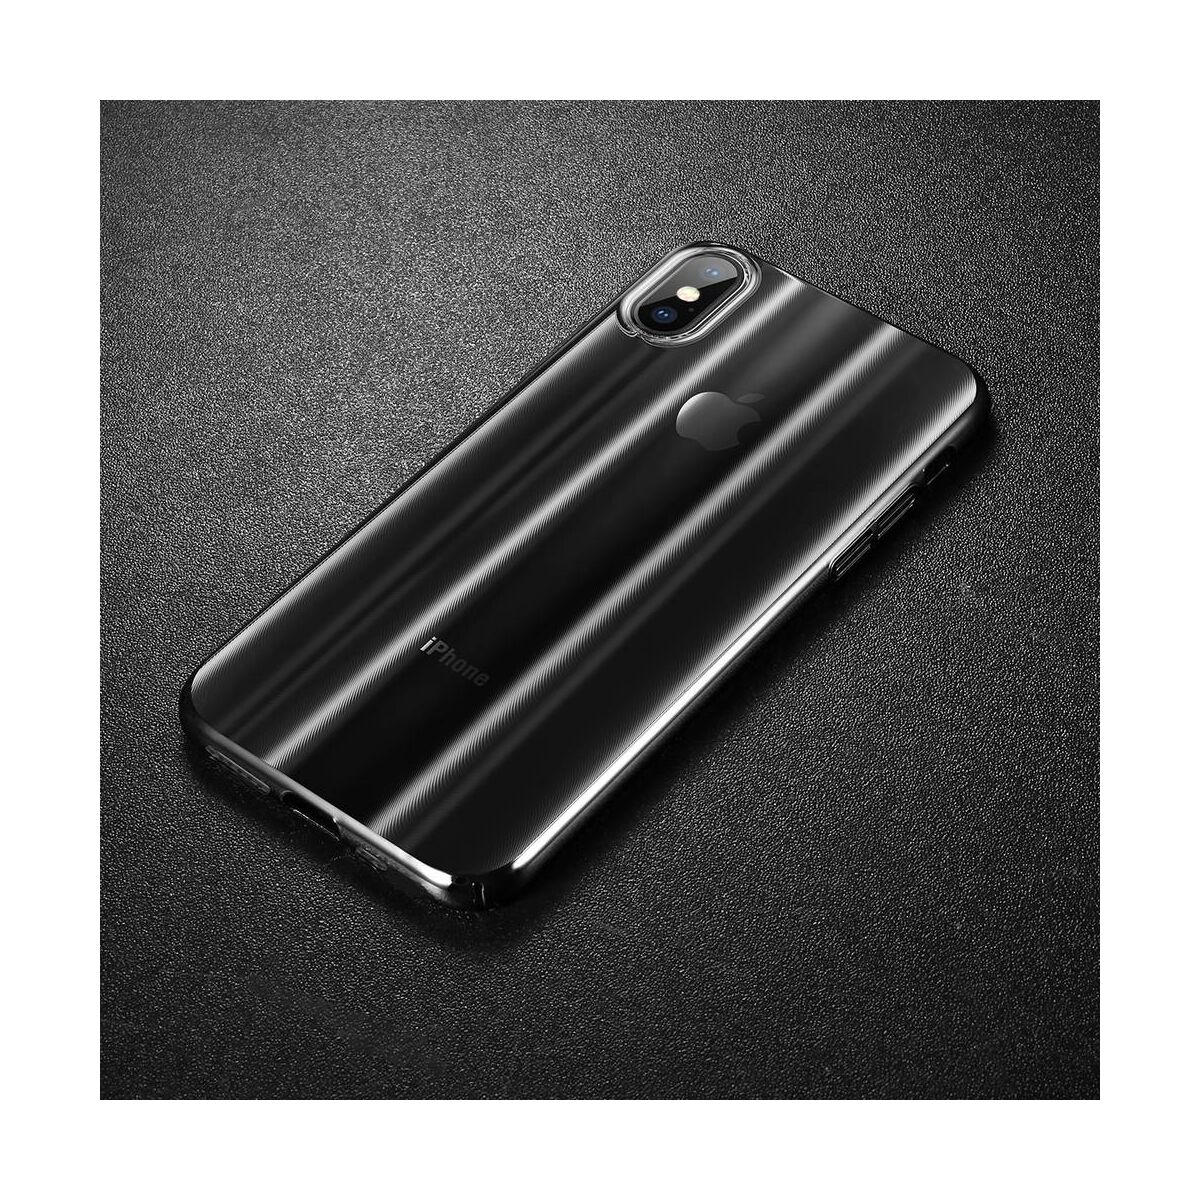 Kép 9/9 - Baseus iPhone XS Max tok, Aurora, átlátszó, fekete (WIAPIPH65-JG01)